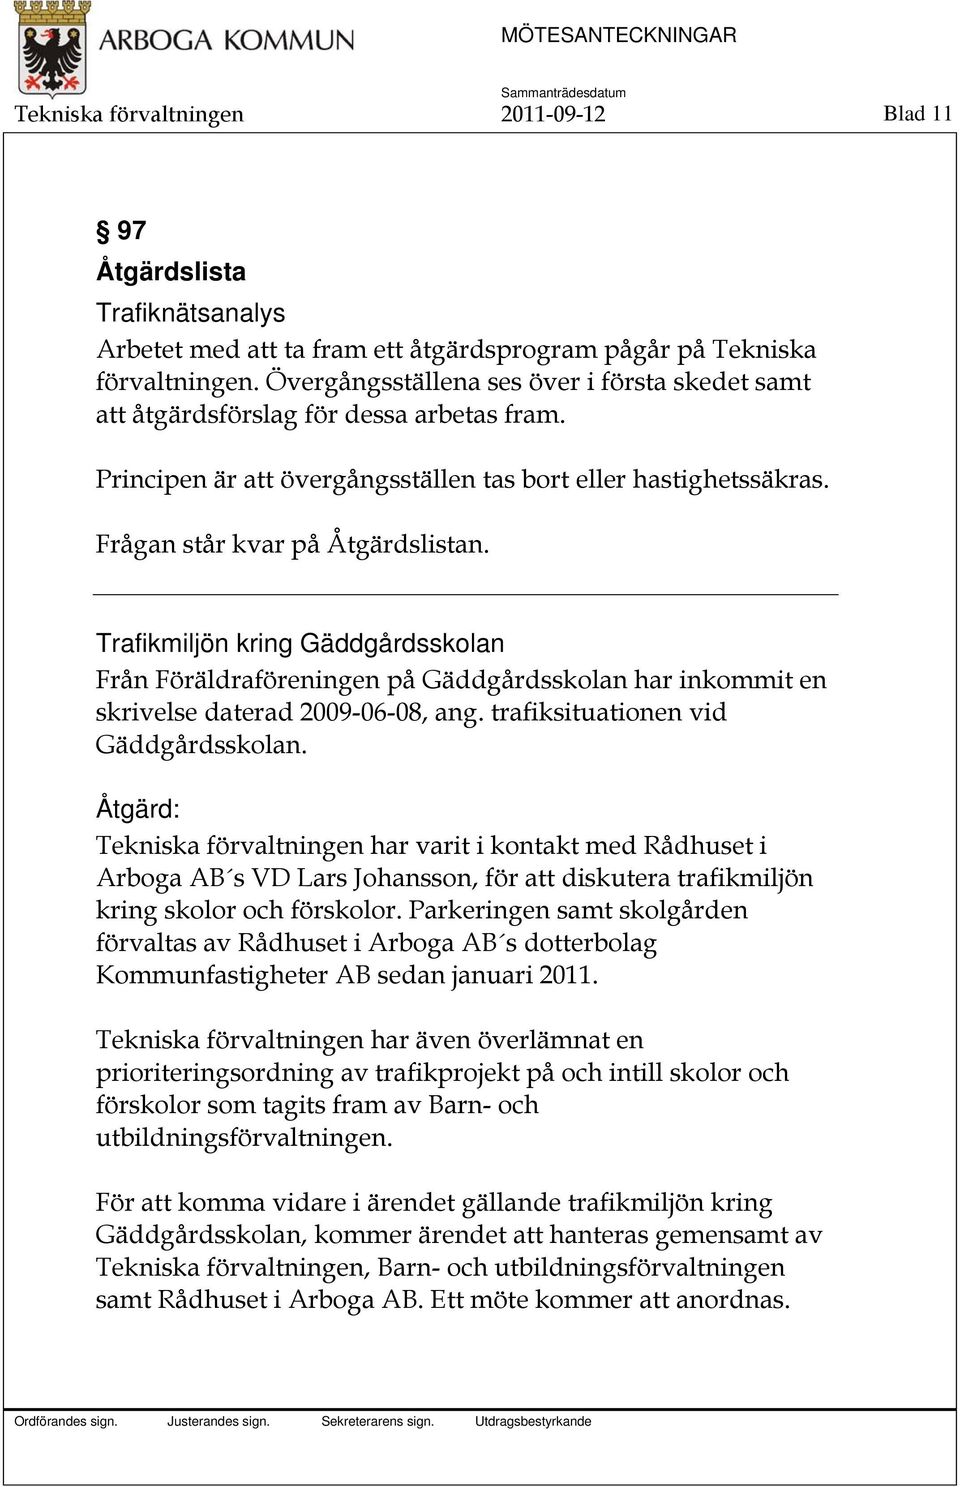 Trafikmiljön kring Gäddgårdsskolan Från Föräldraföreningen på Gäddgårdsskolan har inkommit en skrivelse daterad 2009-06-08, ang. trafiksituationen vid Gäddgårdsskolan.